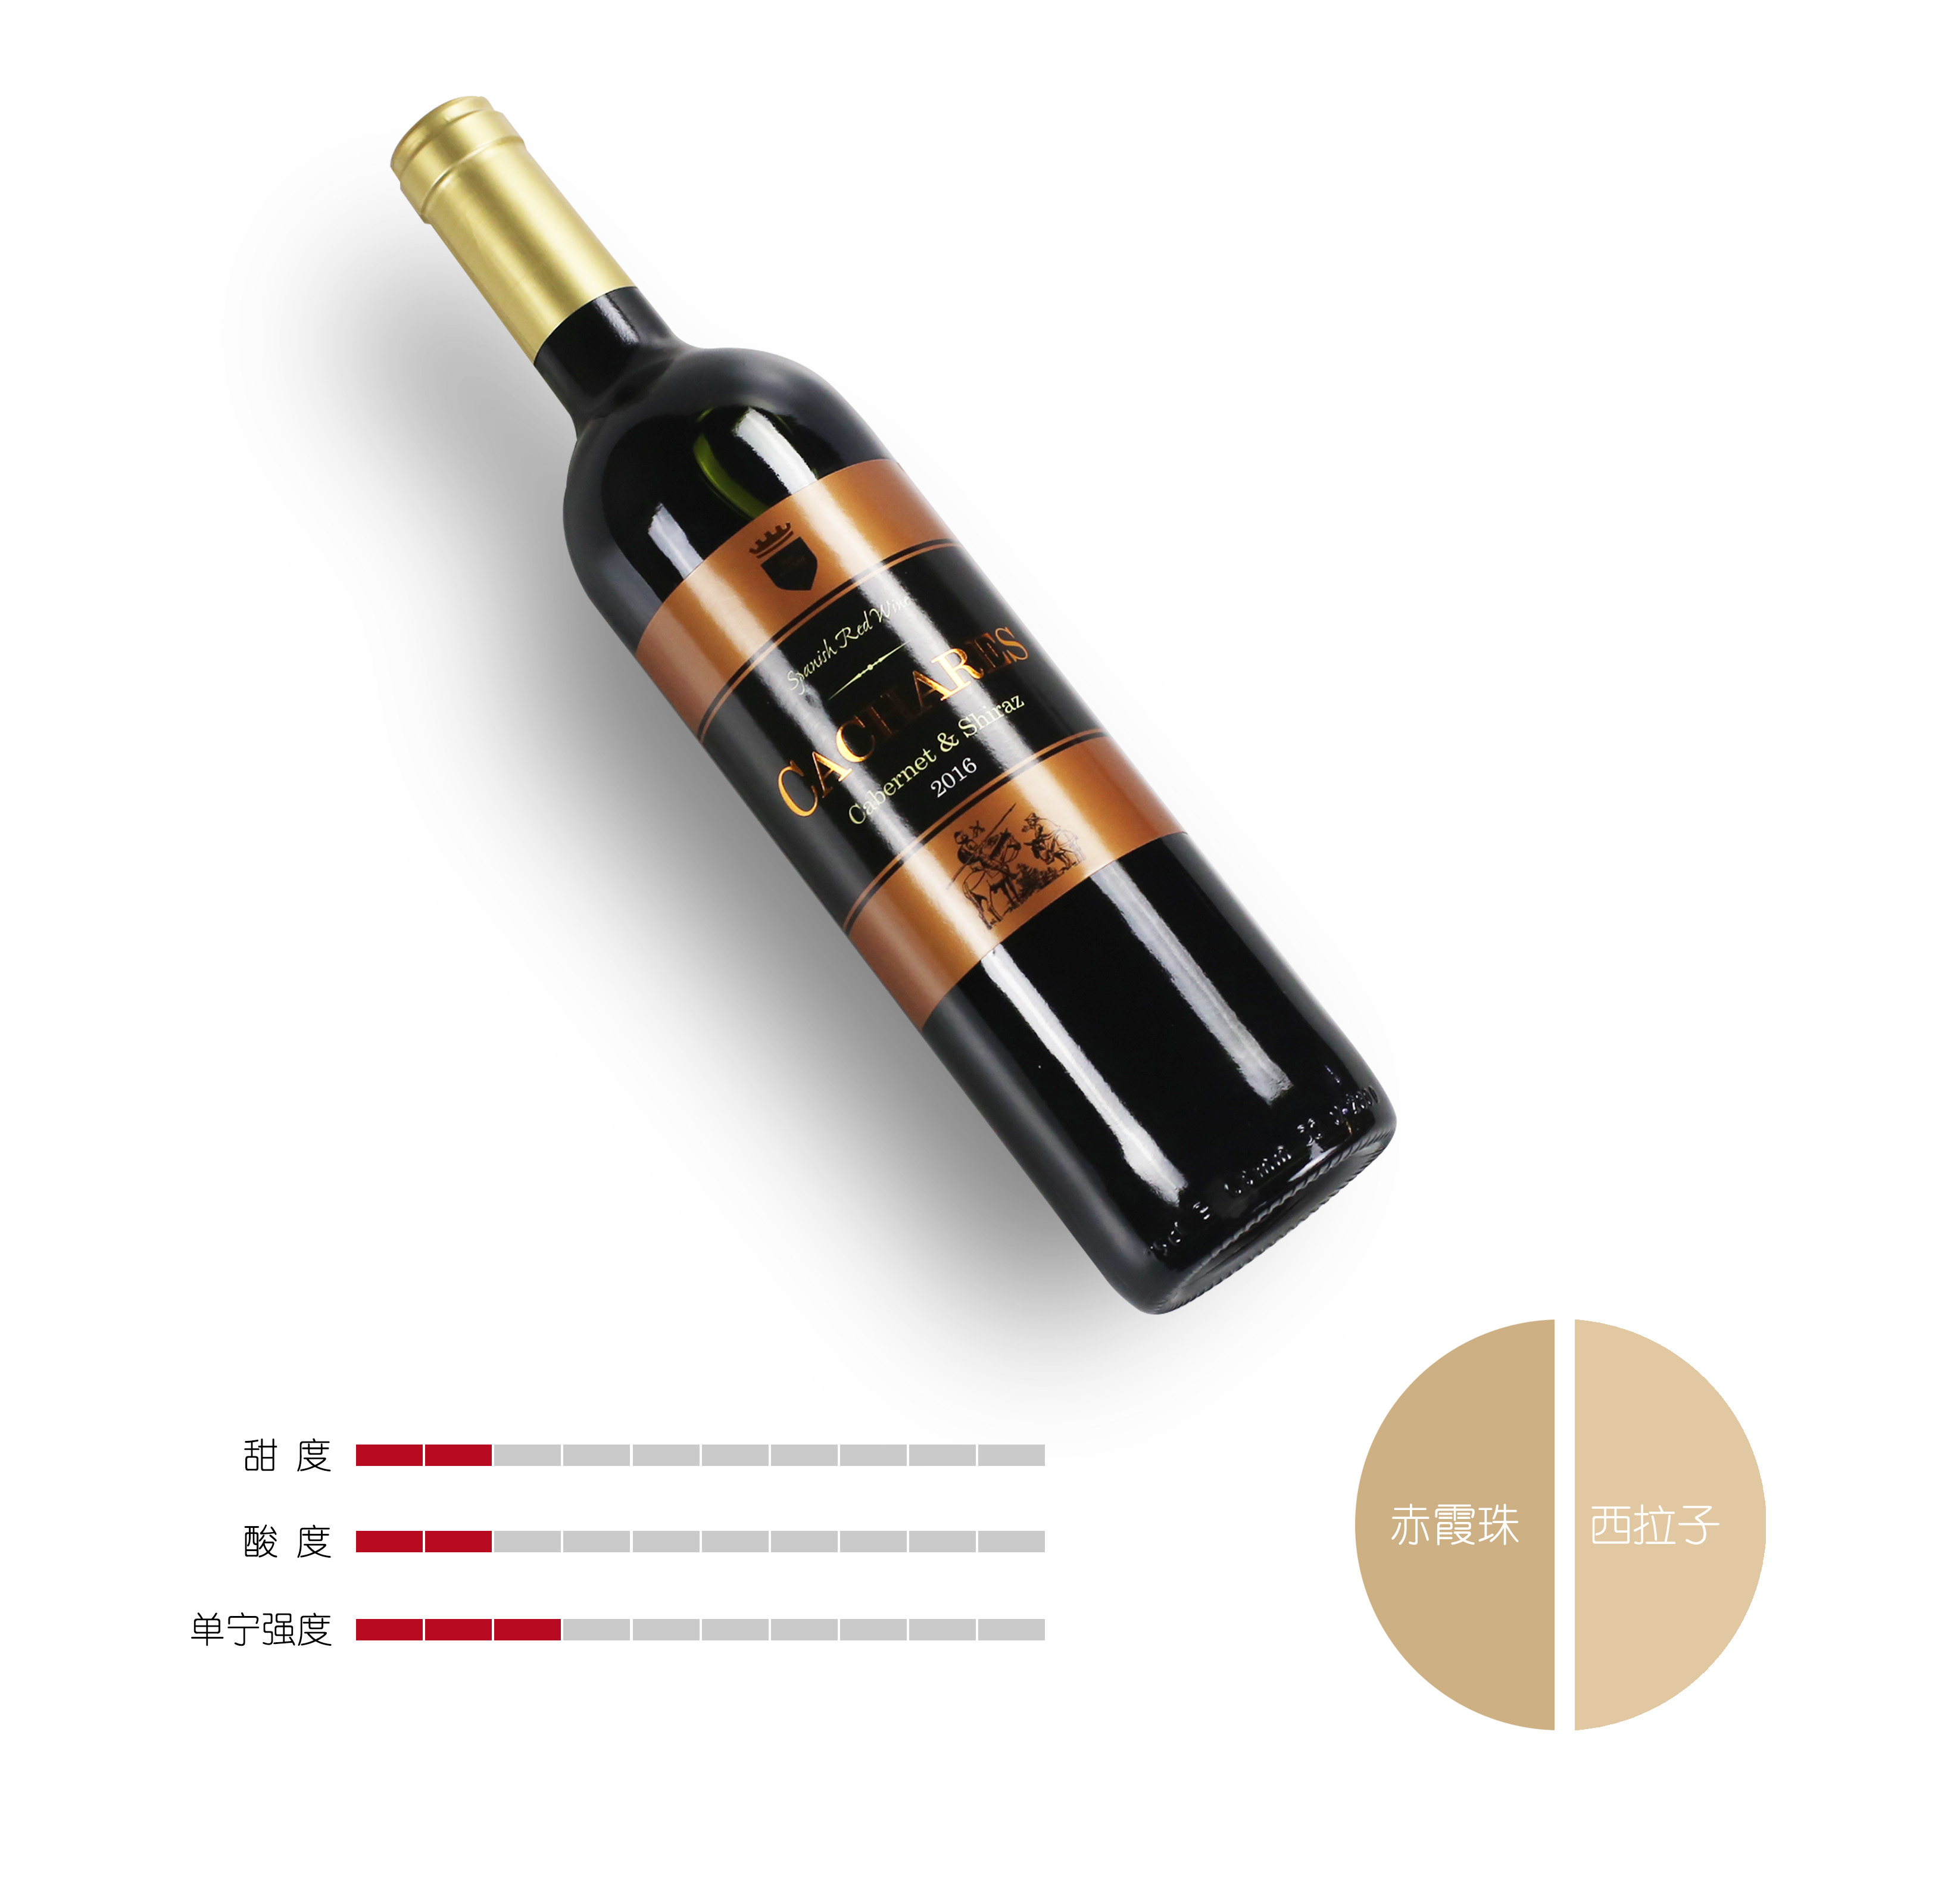 西班牙/葡萄酒/原瓶原装进口产品图